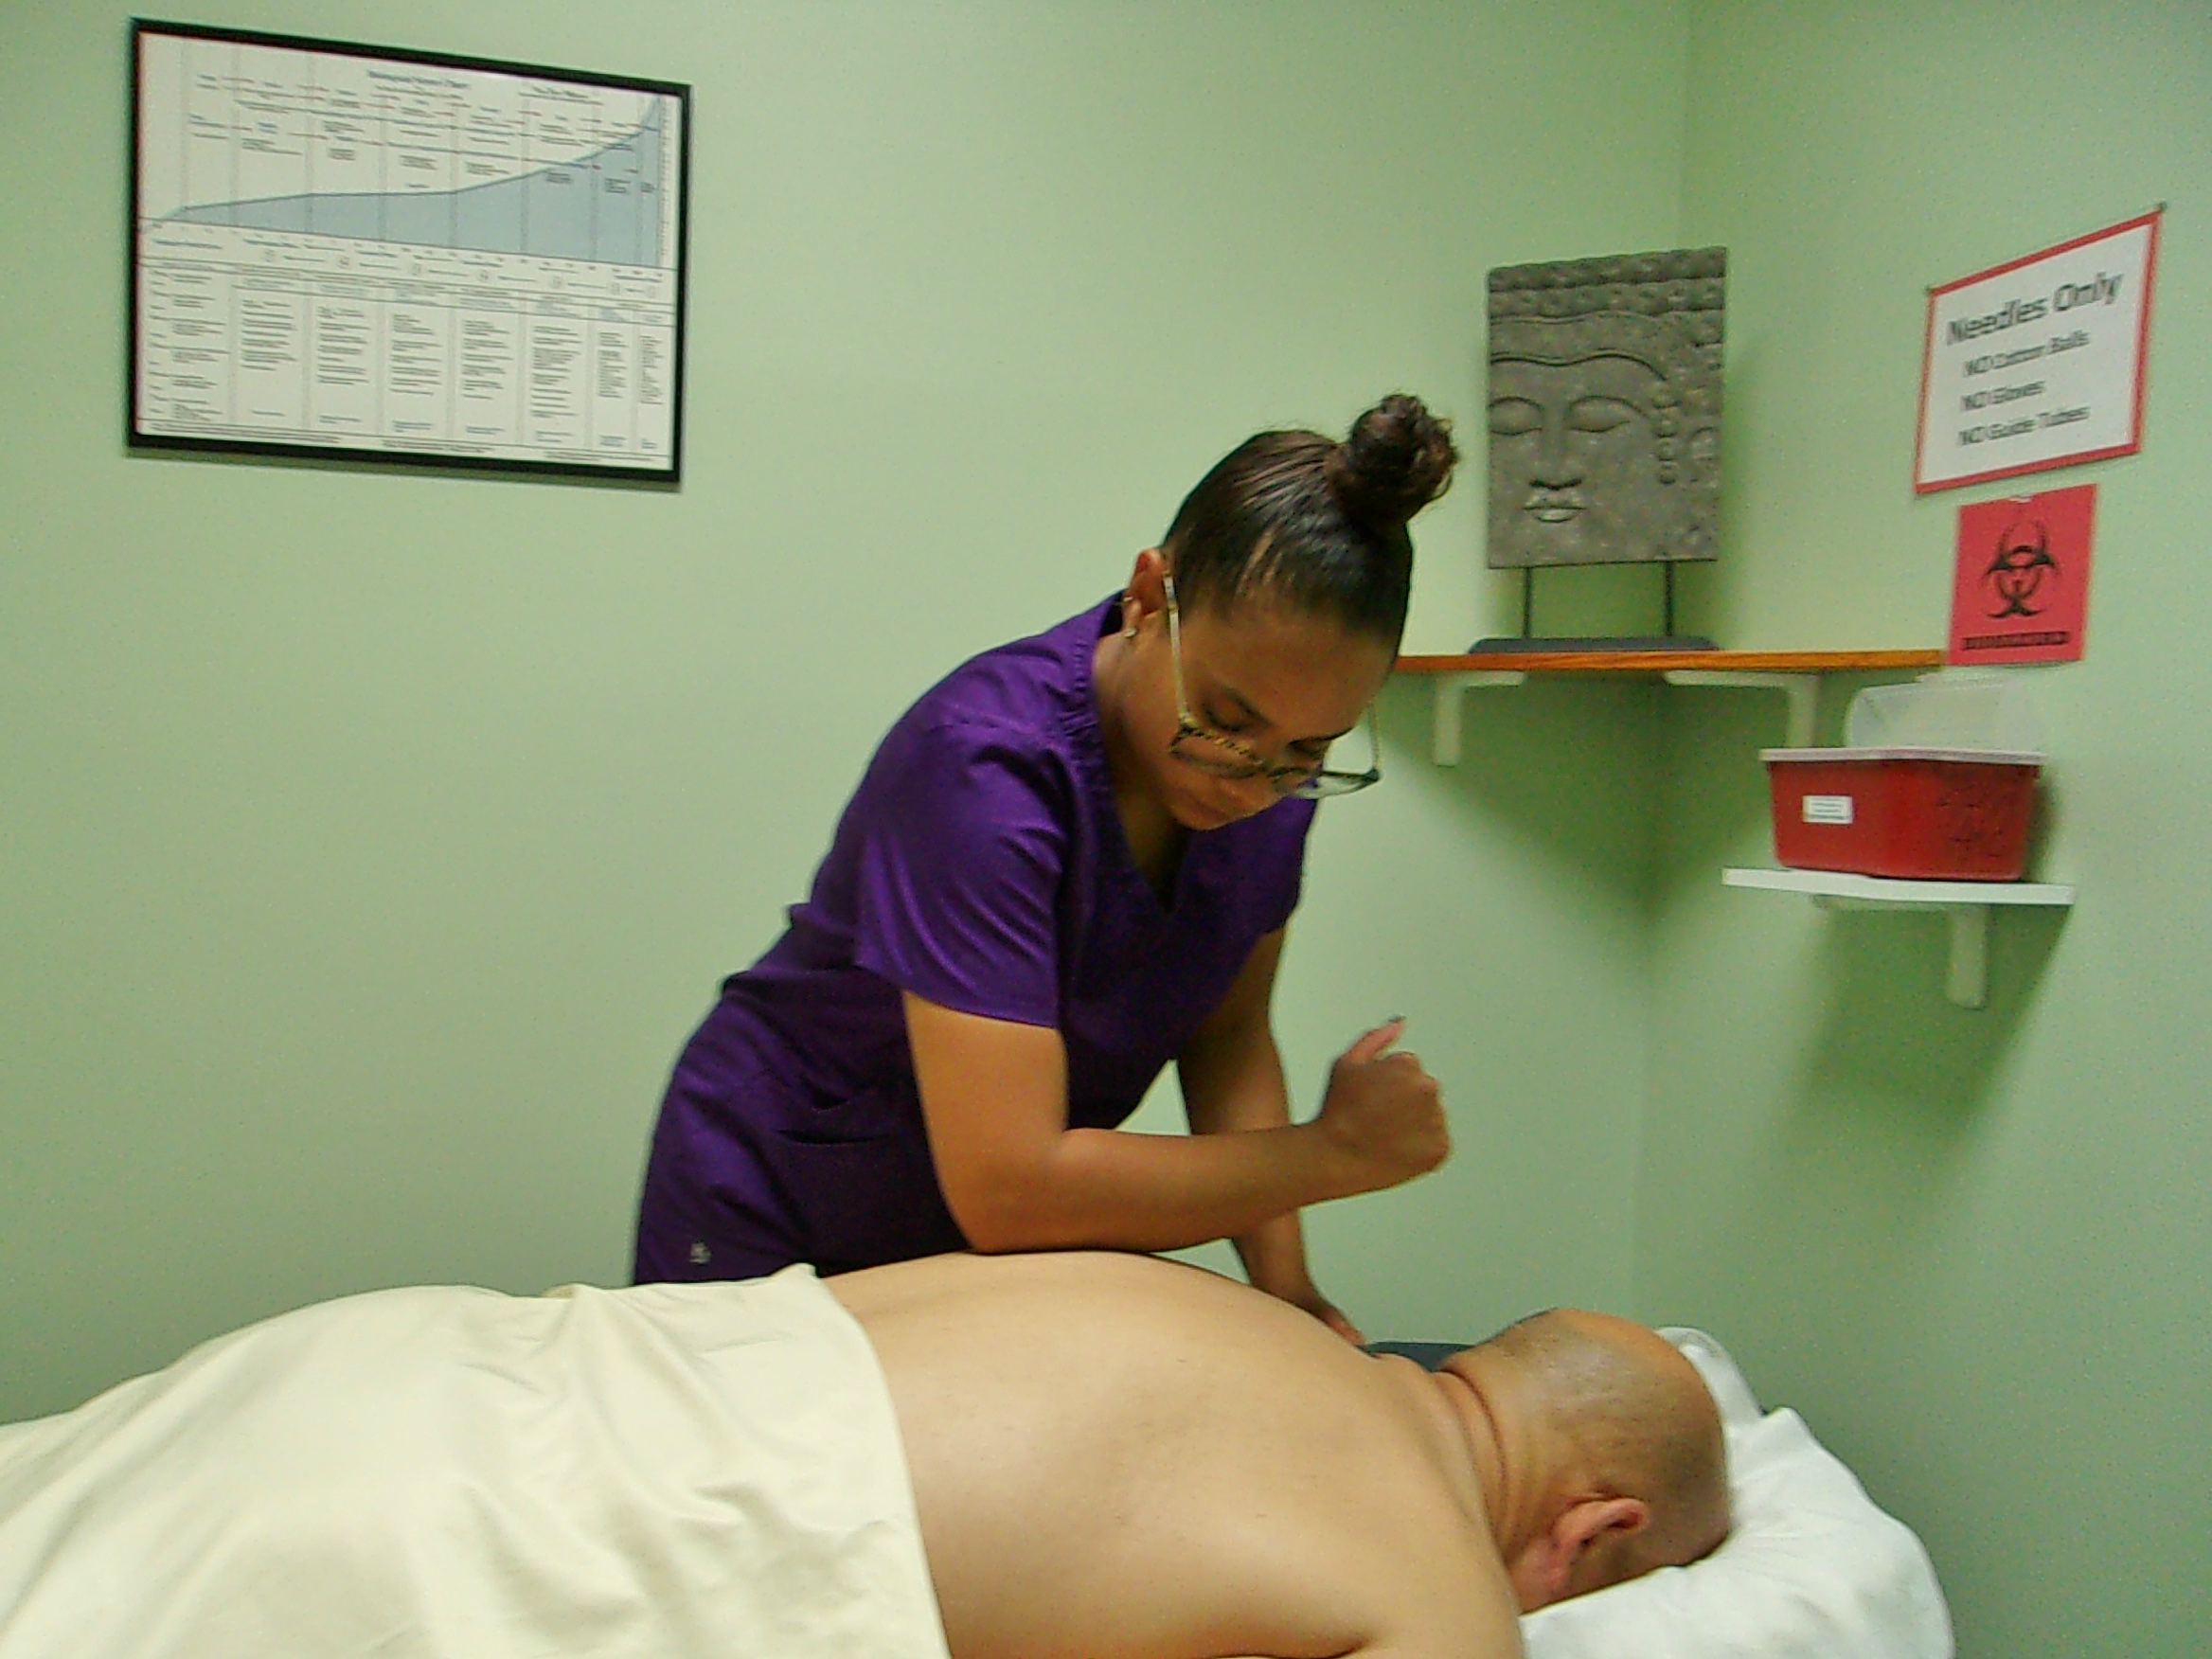 Massage Therapy School in Miami, FL | Accredited Massage School ...